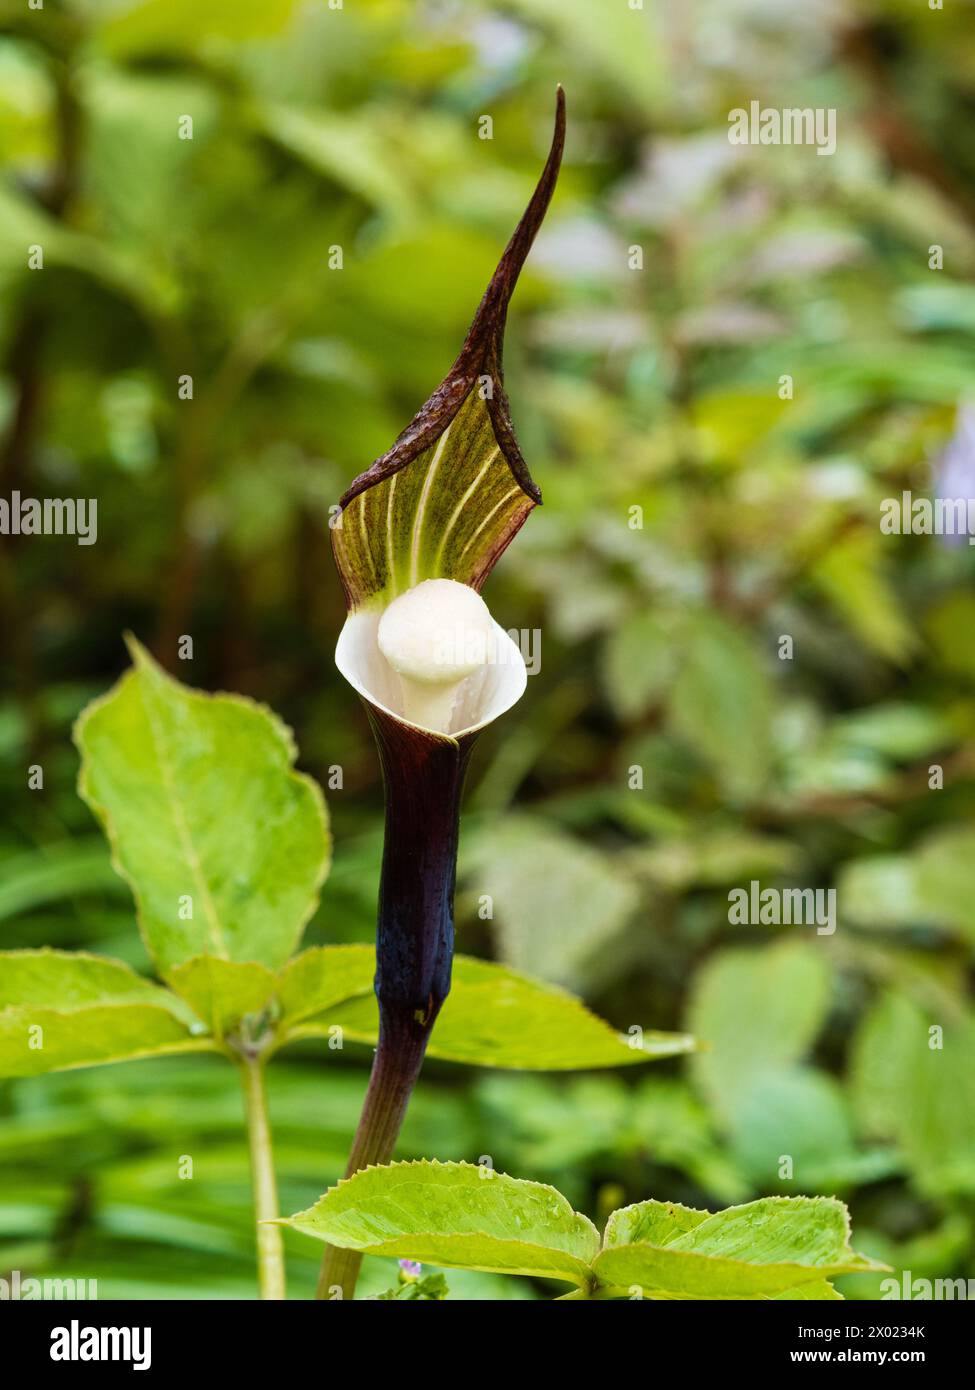 Exótico marrón, encapuchado y blanco interior y spadix de la resistente, floración primaveral, lirio cobra japonesa de bosque, Arisaema sikokianum Foto de stock